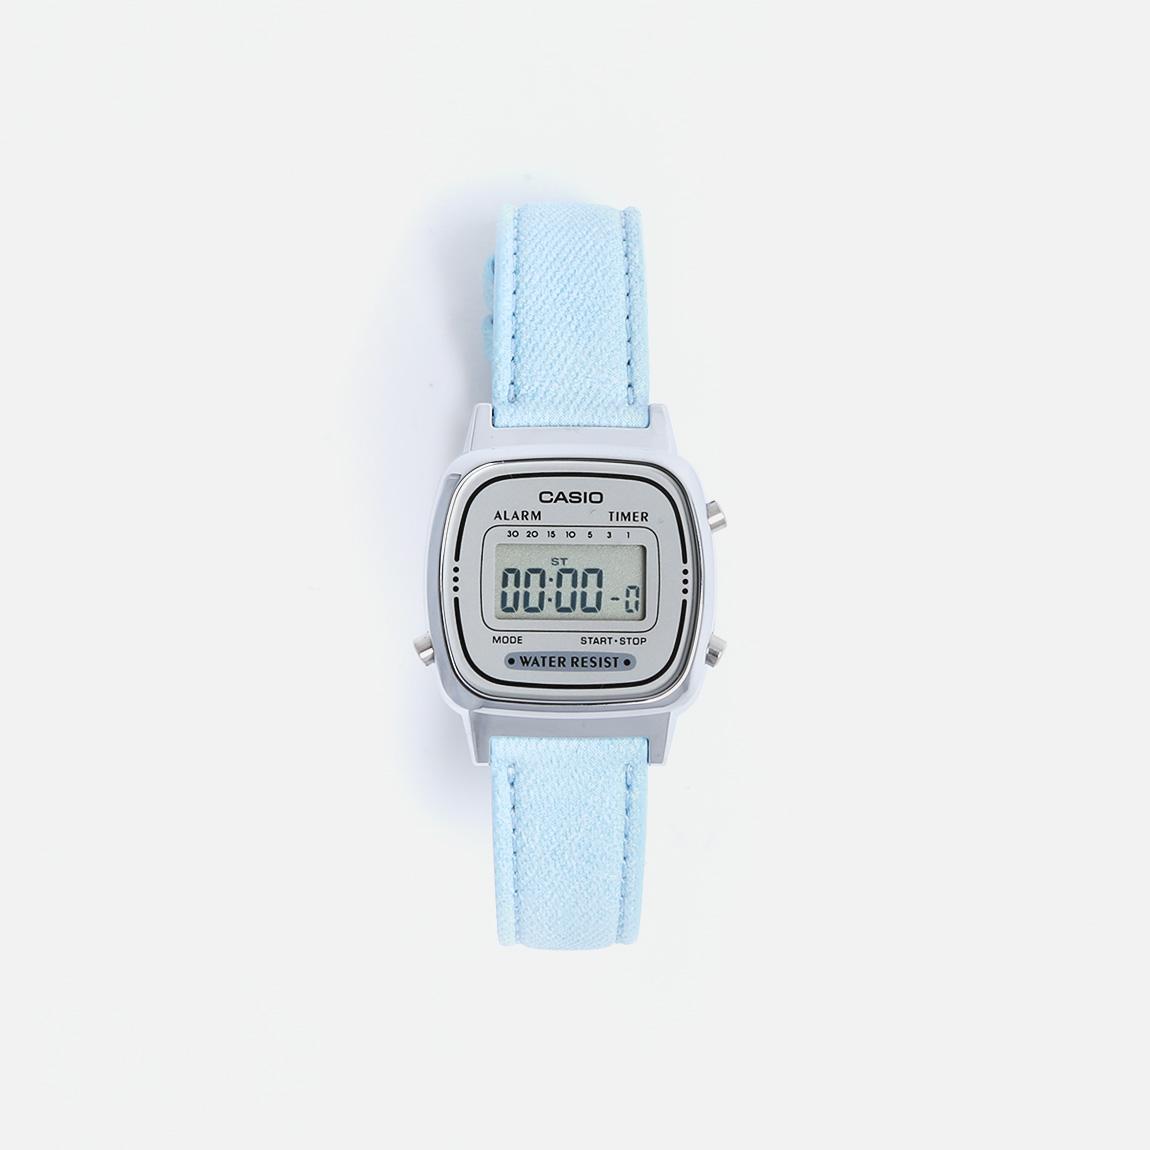 WRIST WATCHES DIGITAL - LIGHT BLUE Casio Watches | Superbalist.com1150 x 1150